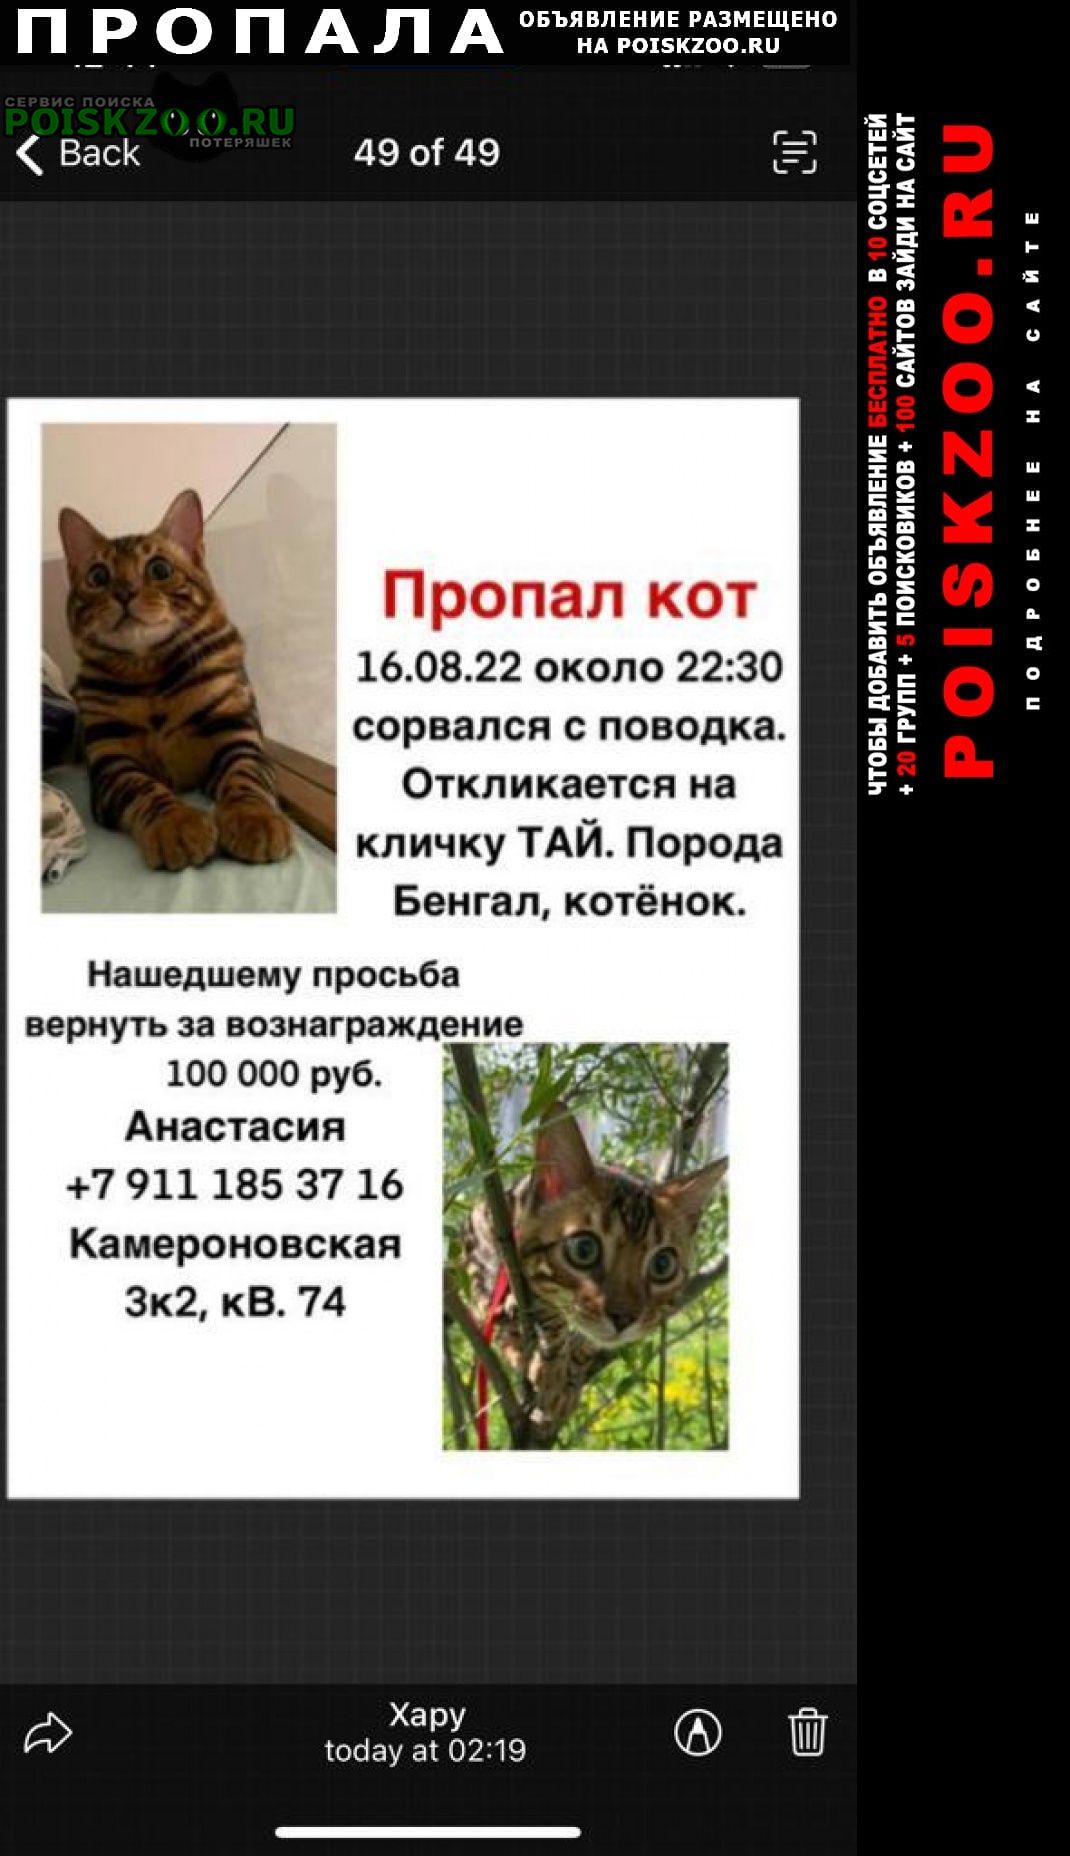 Пропал кот бенгал в районе камероновской ул Пушкин